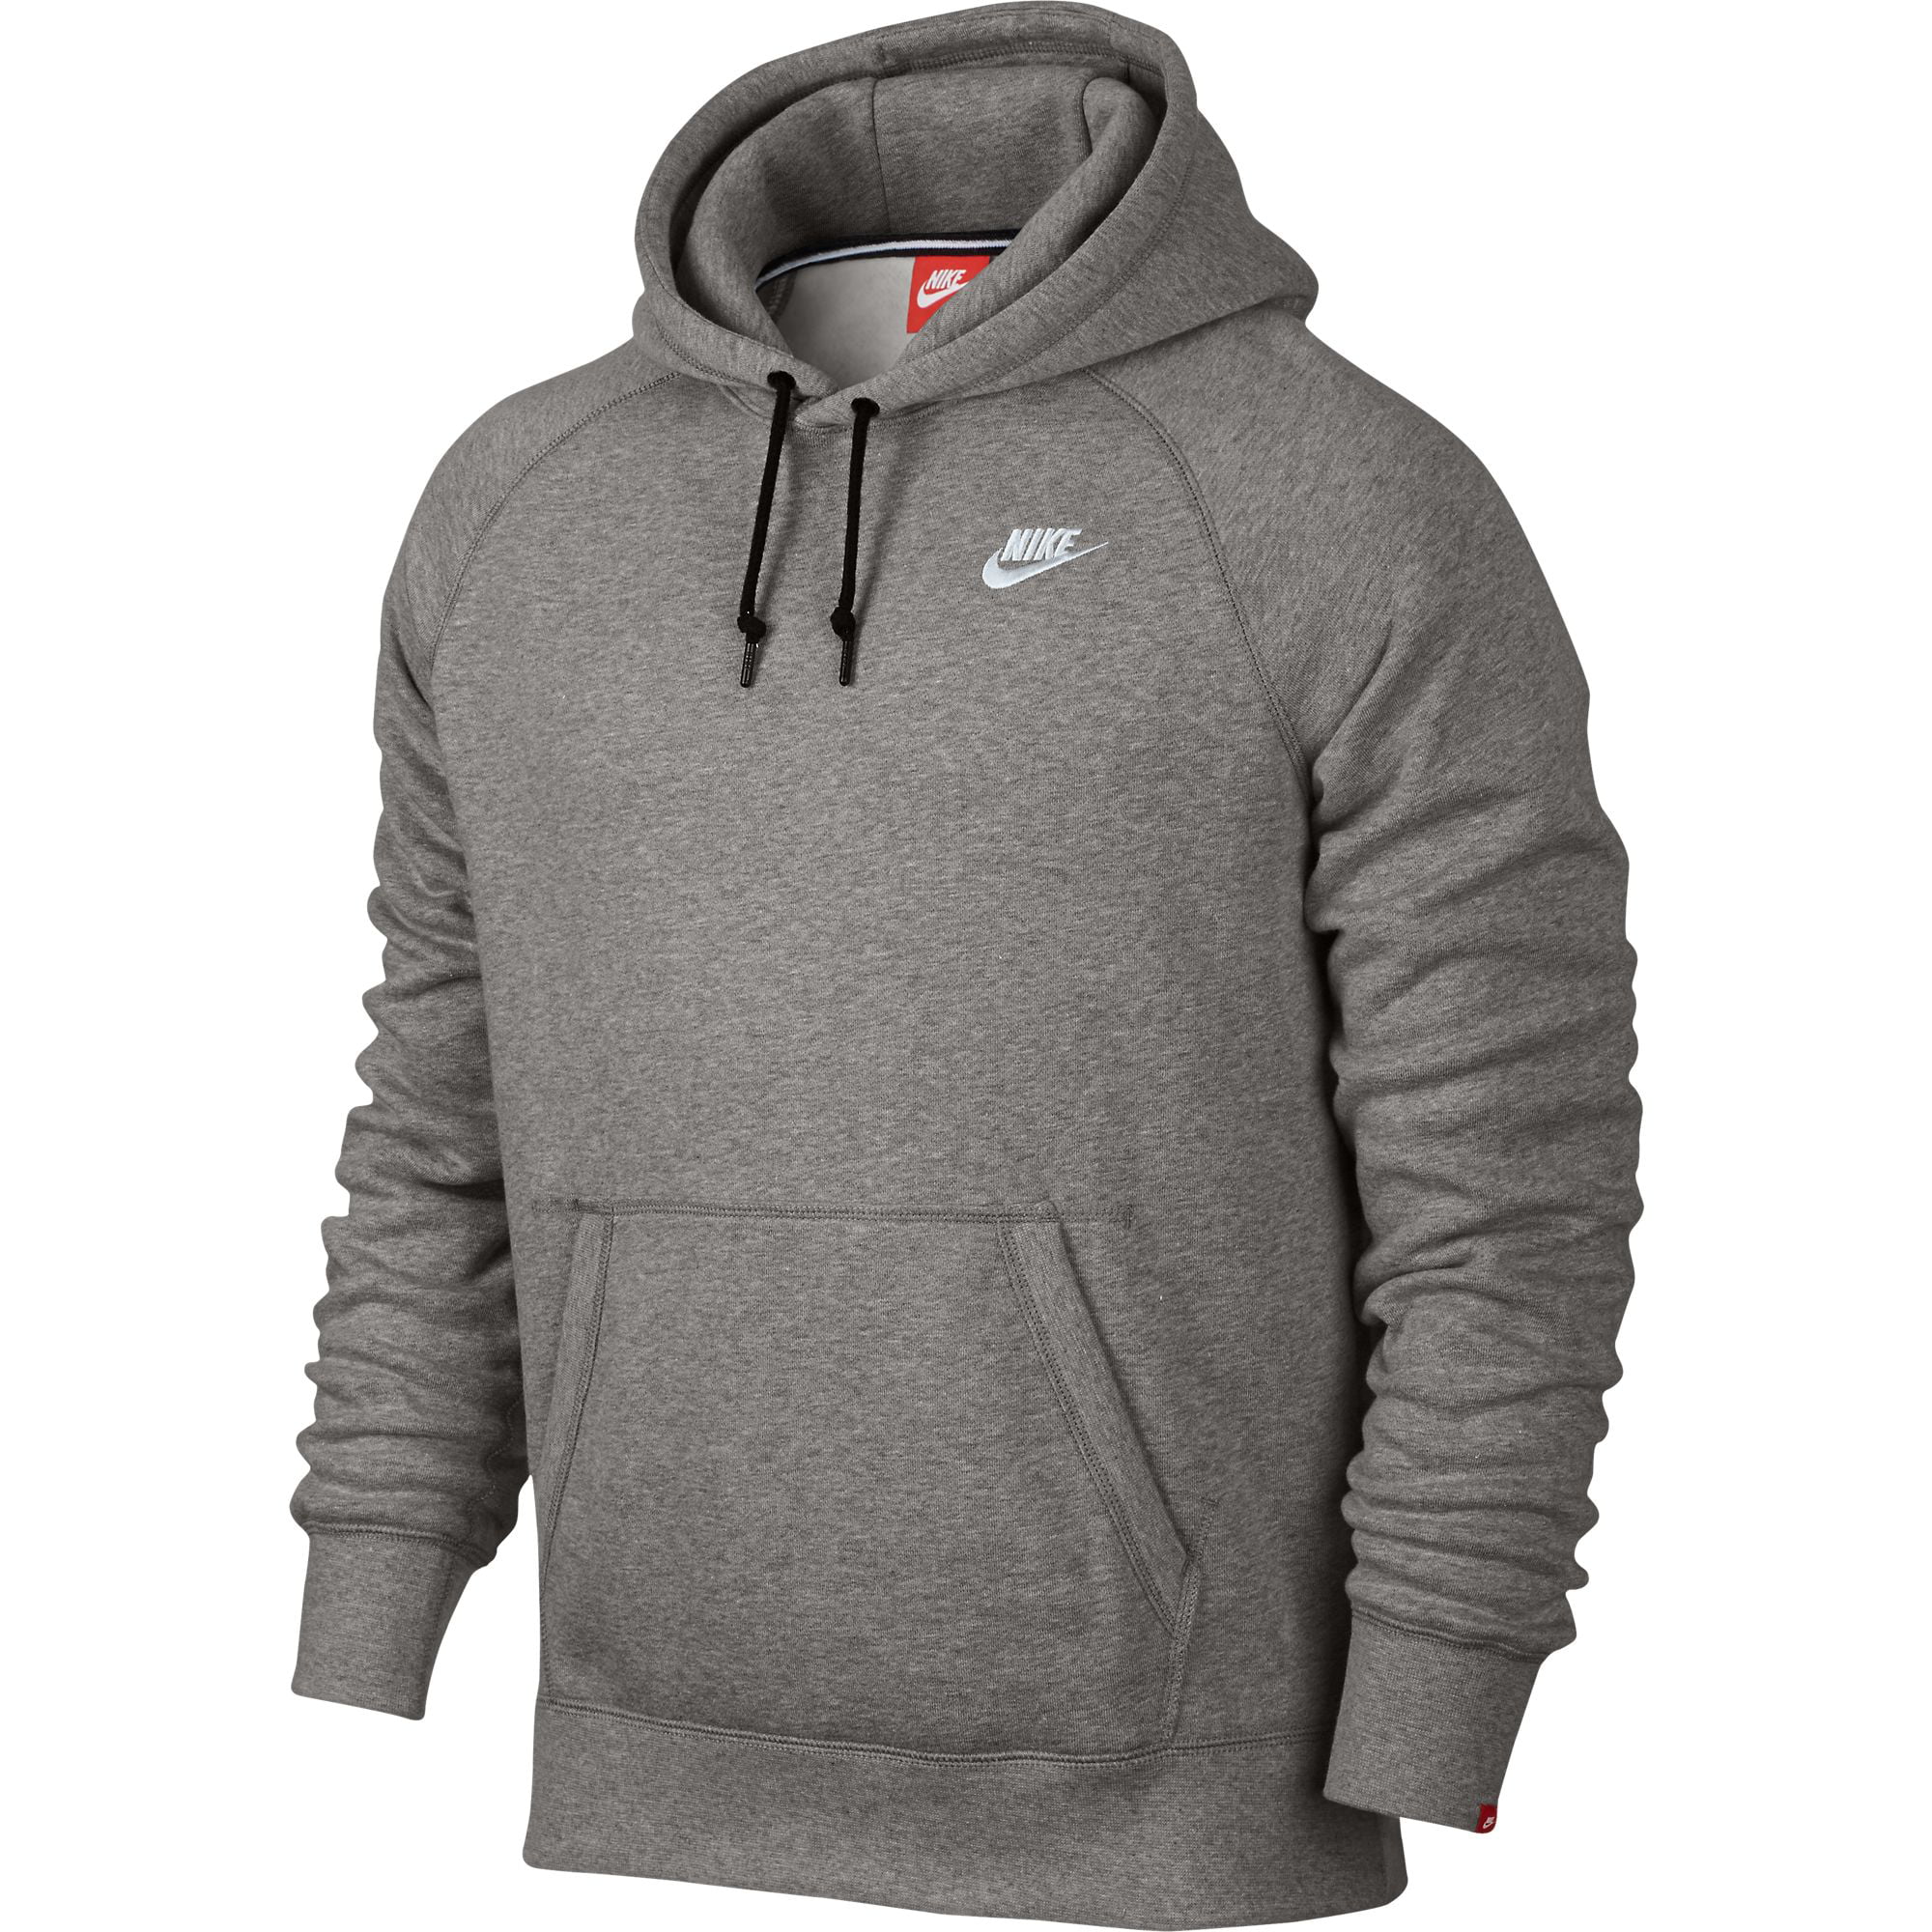 Nike Ace Fleece Pullover Men's Hoodie Athletic Dark Grey/White 598707 ...